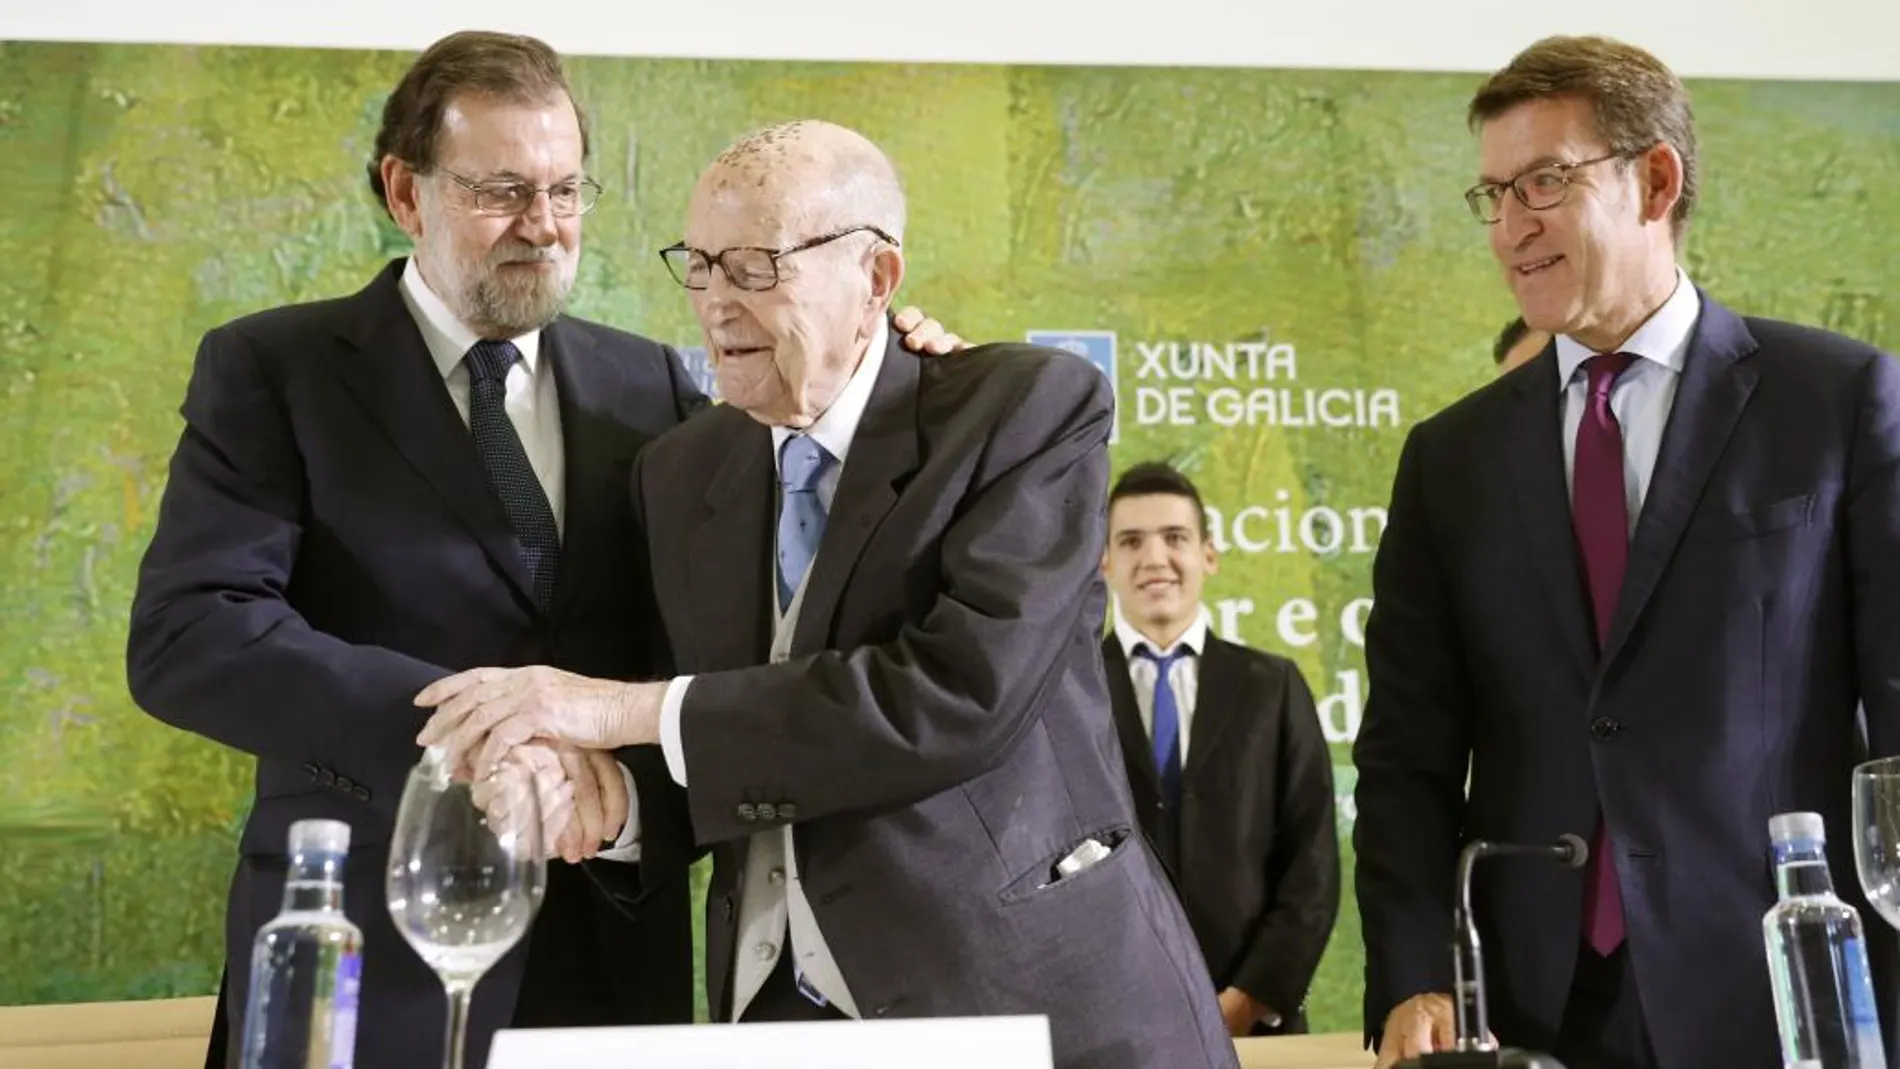 El jefe del Ejecutivo, Mariano Rajoy (i), abraza al primer presidente electo de la Xunta de Galicia, Xerardo Fernández Albor (c), antes de imponerle la Medalla de Oro al Mérito en el Trabajo, junto al presidente de la Xunta, Alberto Núñez Feijóo